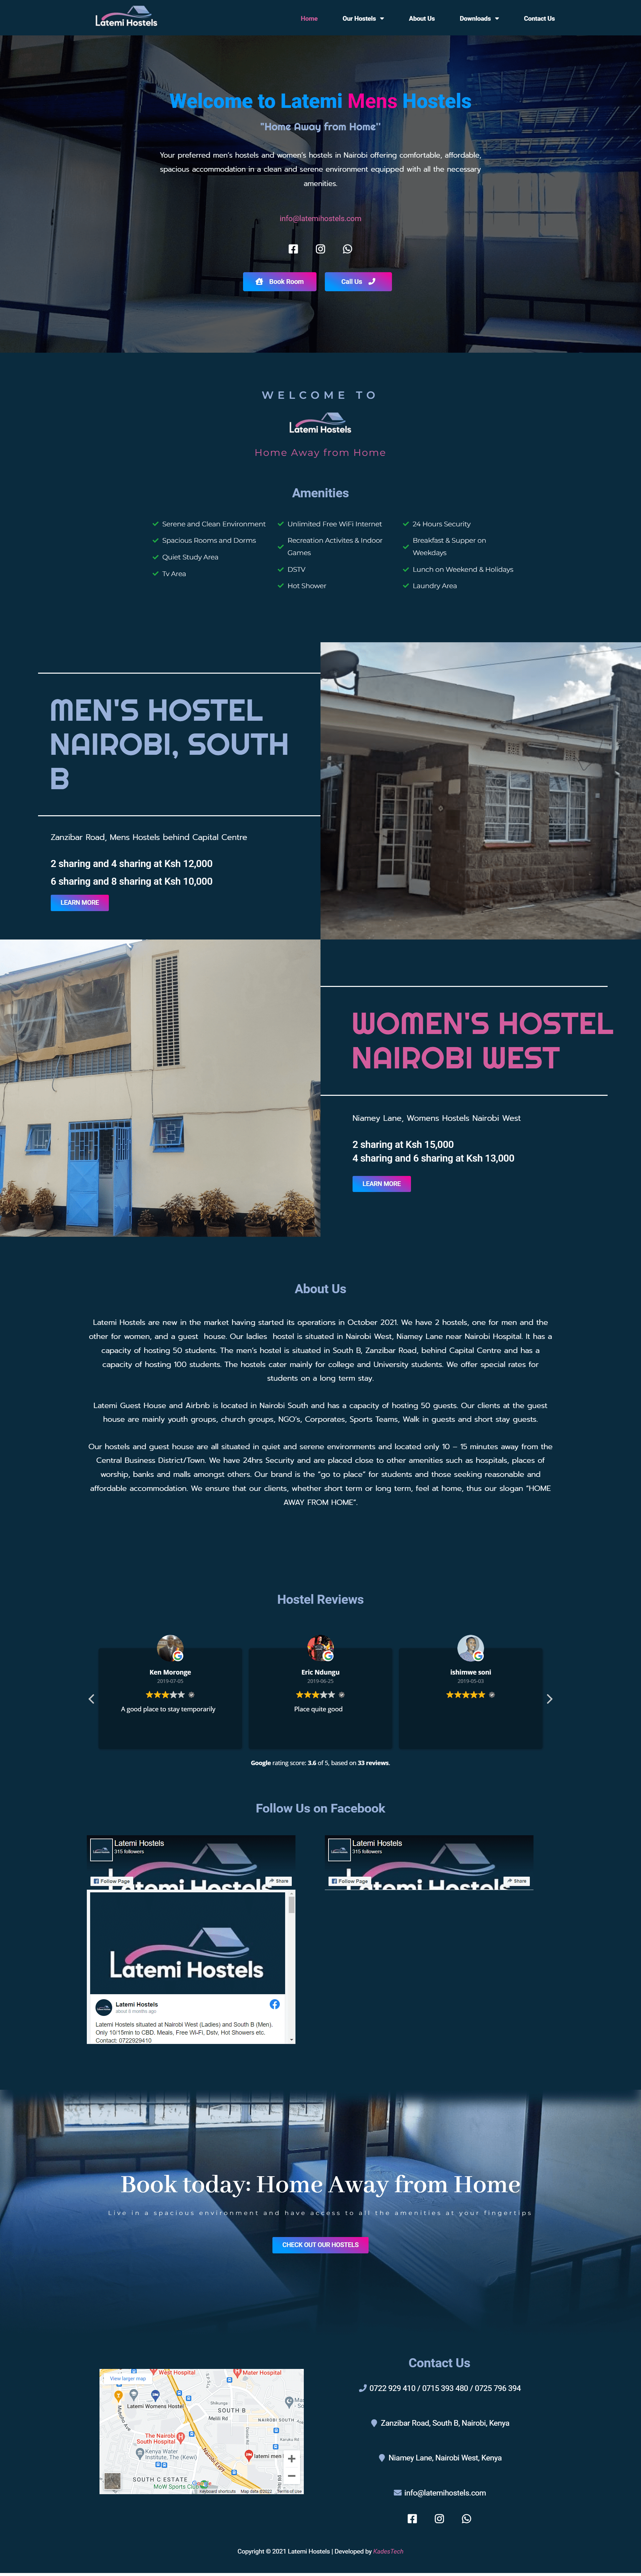 Men s Hostels and Women s Hostels Nairobi Latemi Hostels min